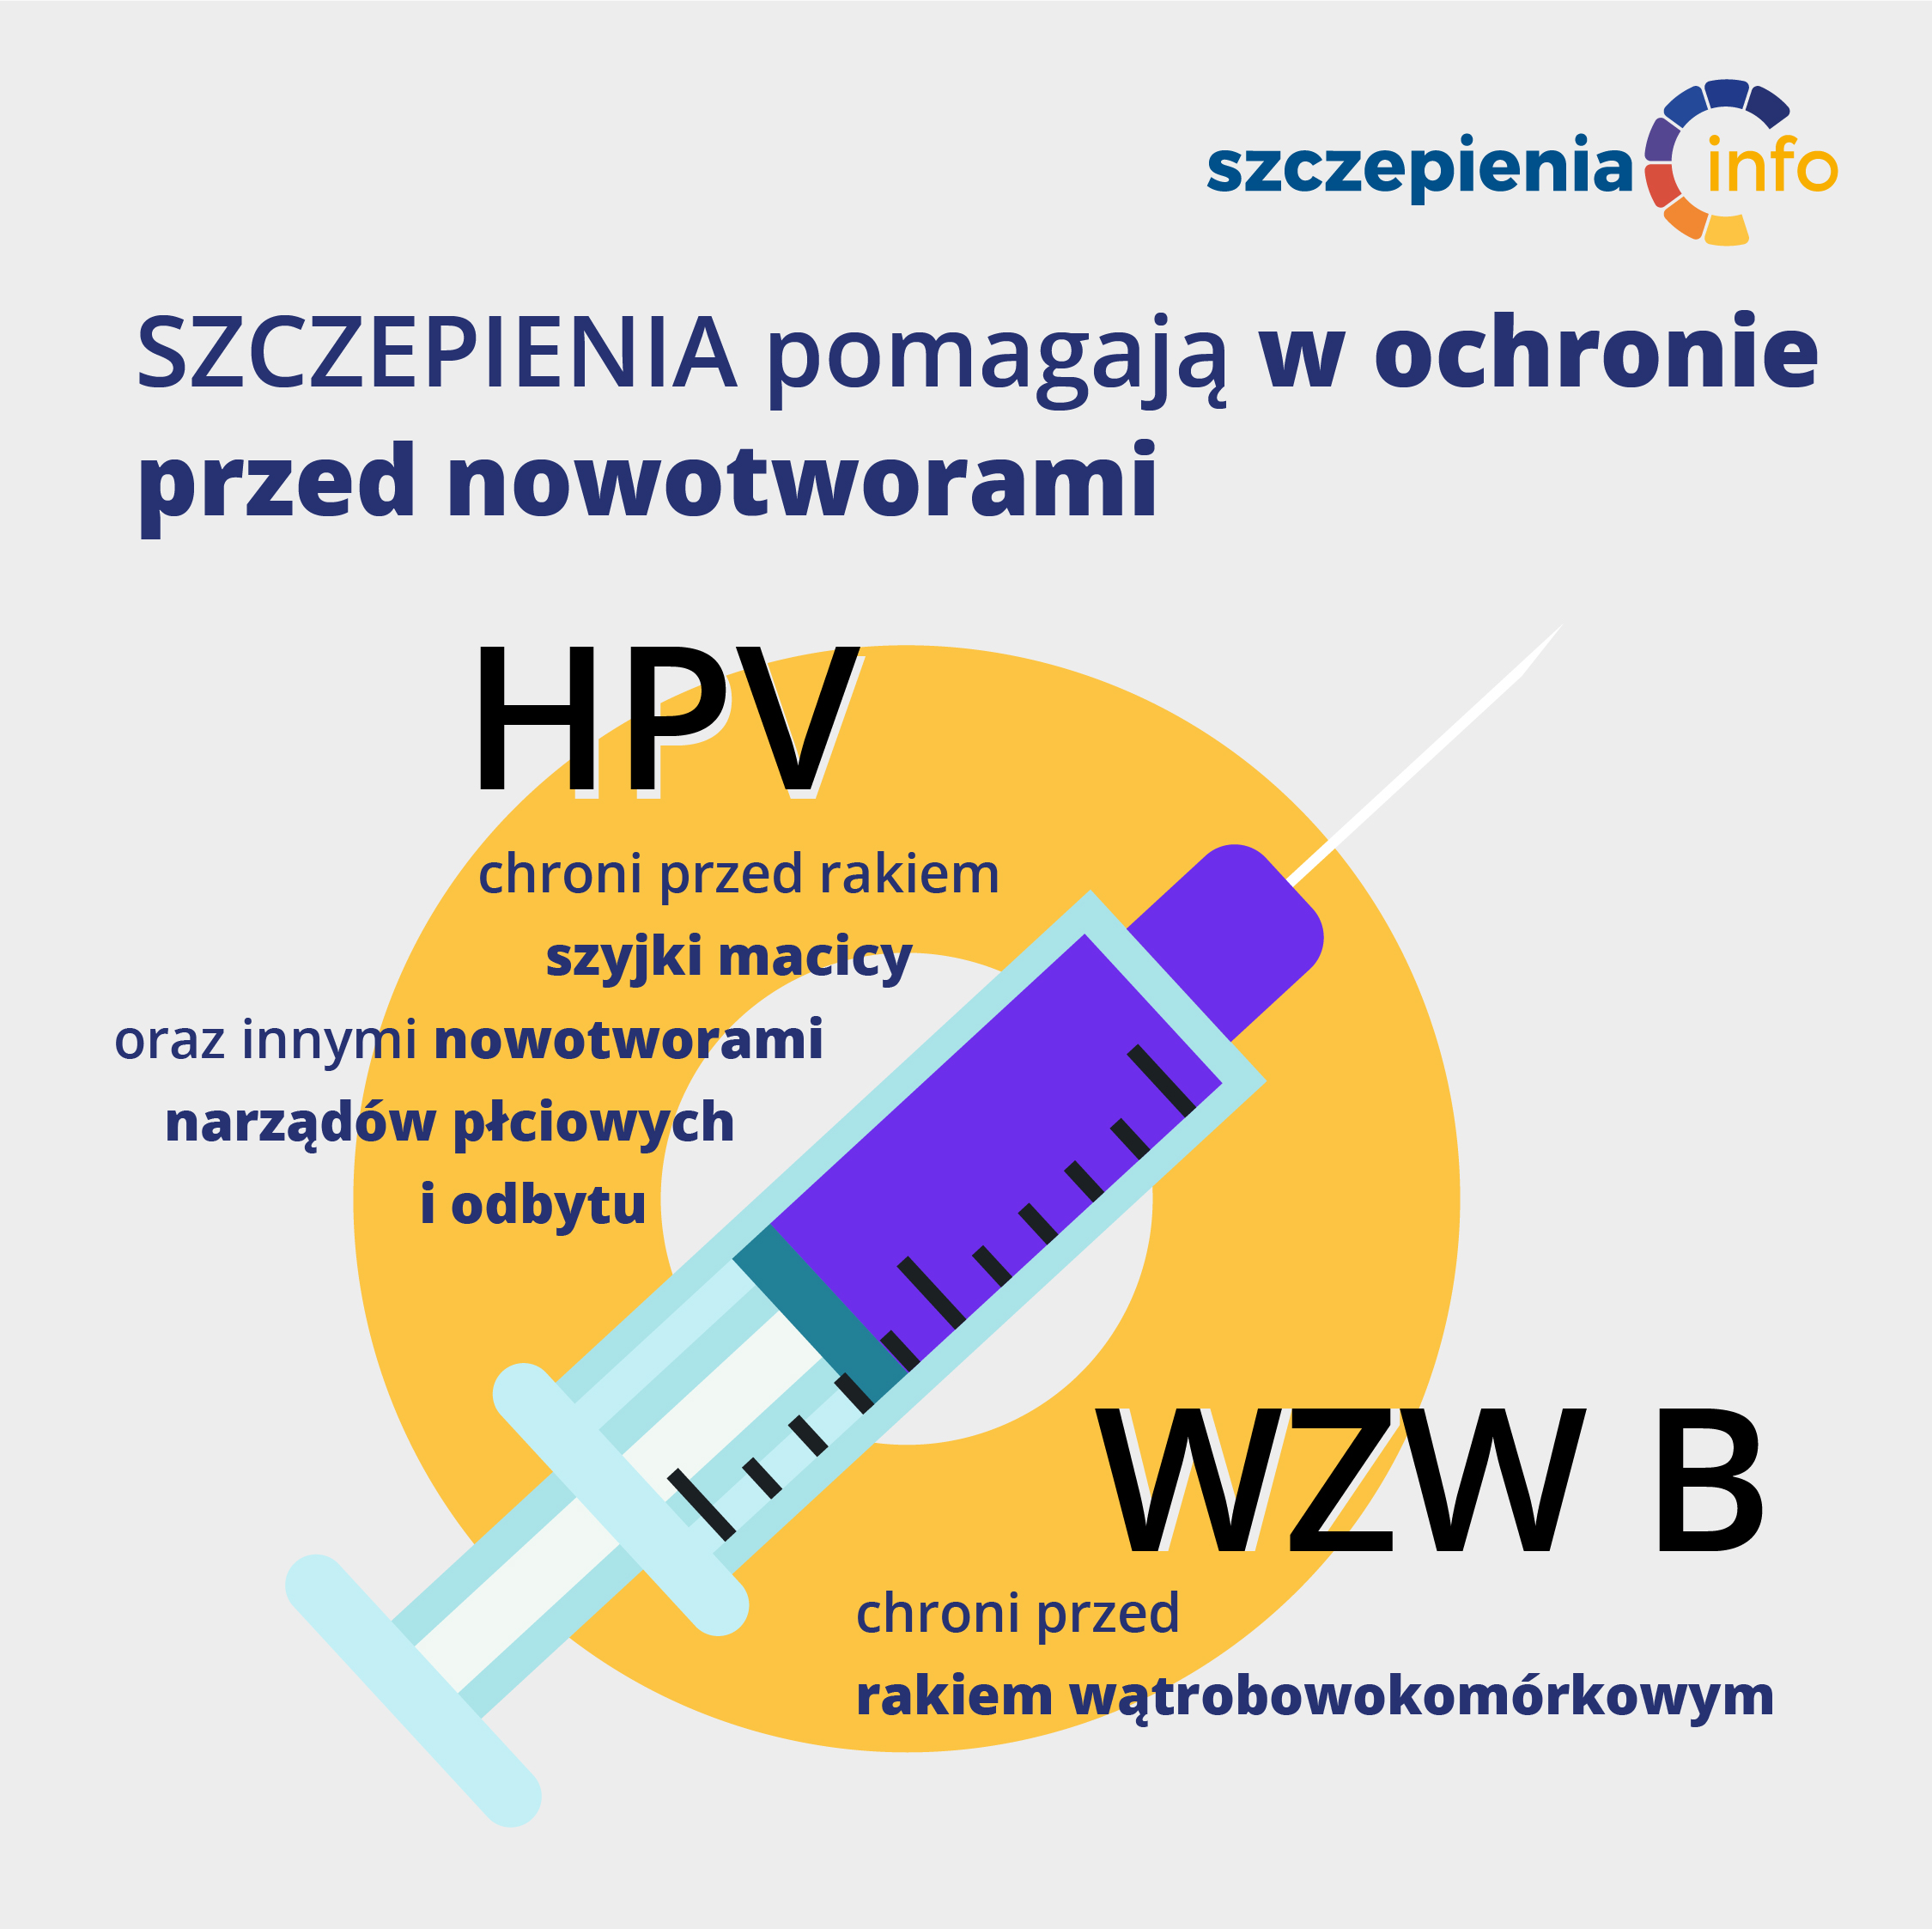 Informacja o szczepieniach przeciwko HPV